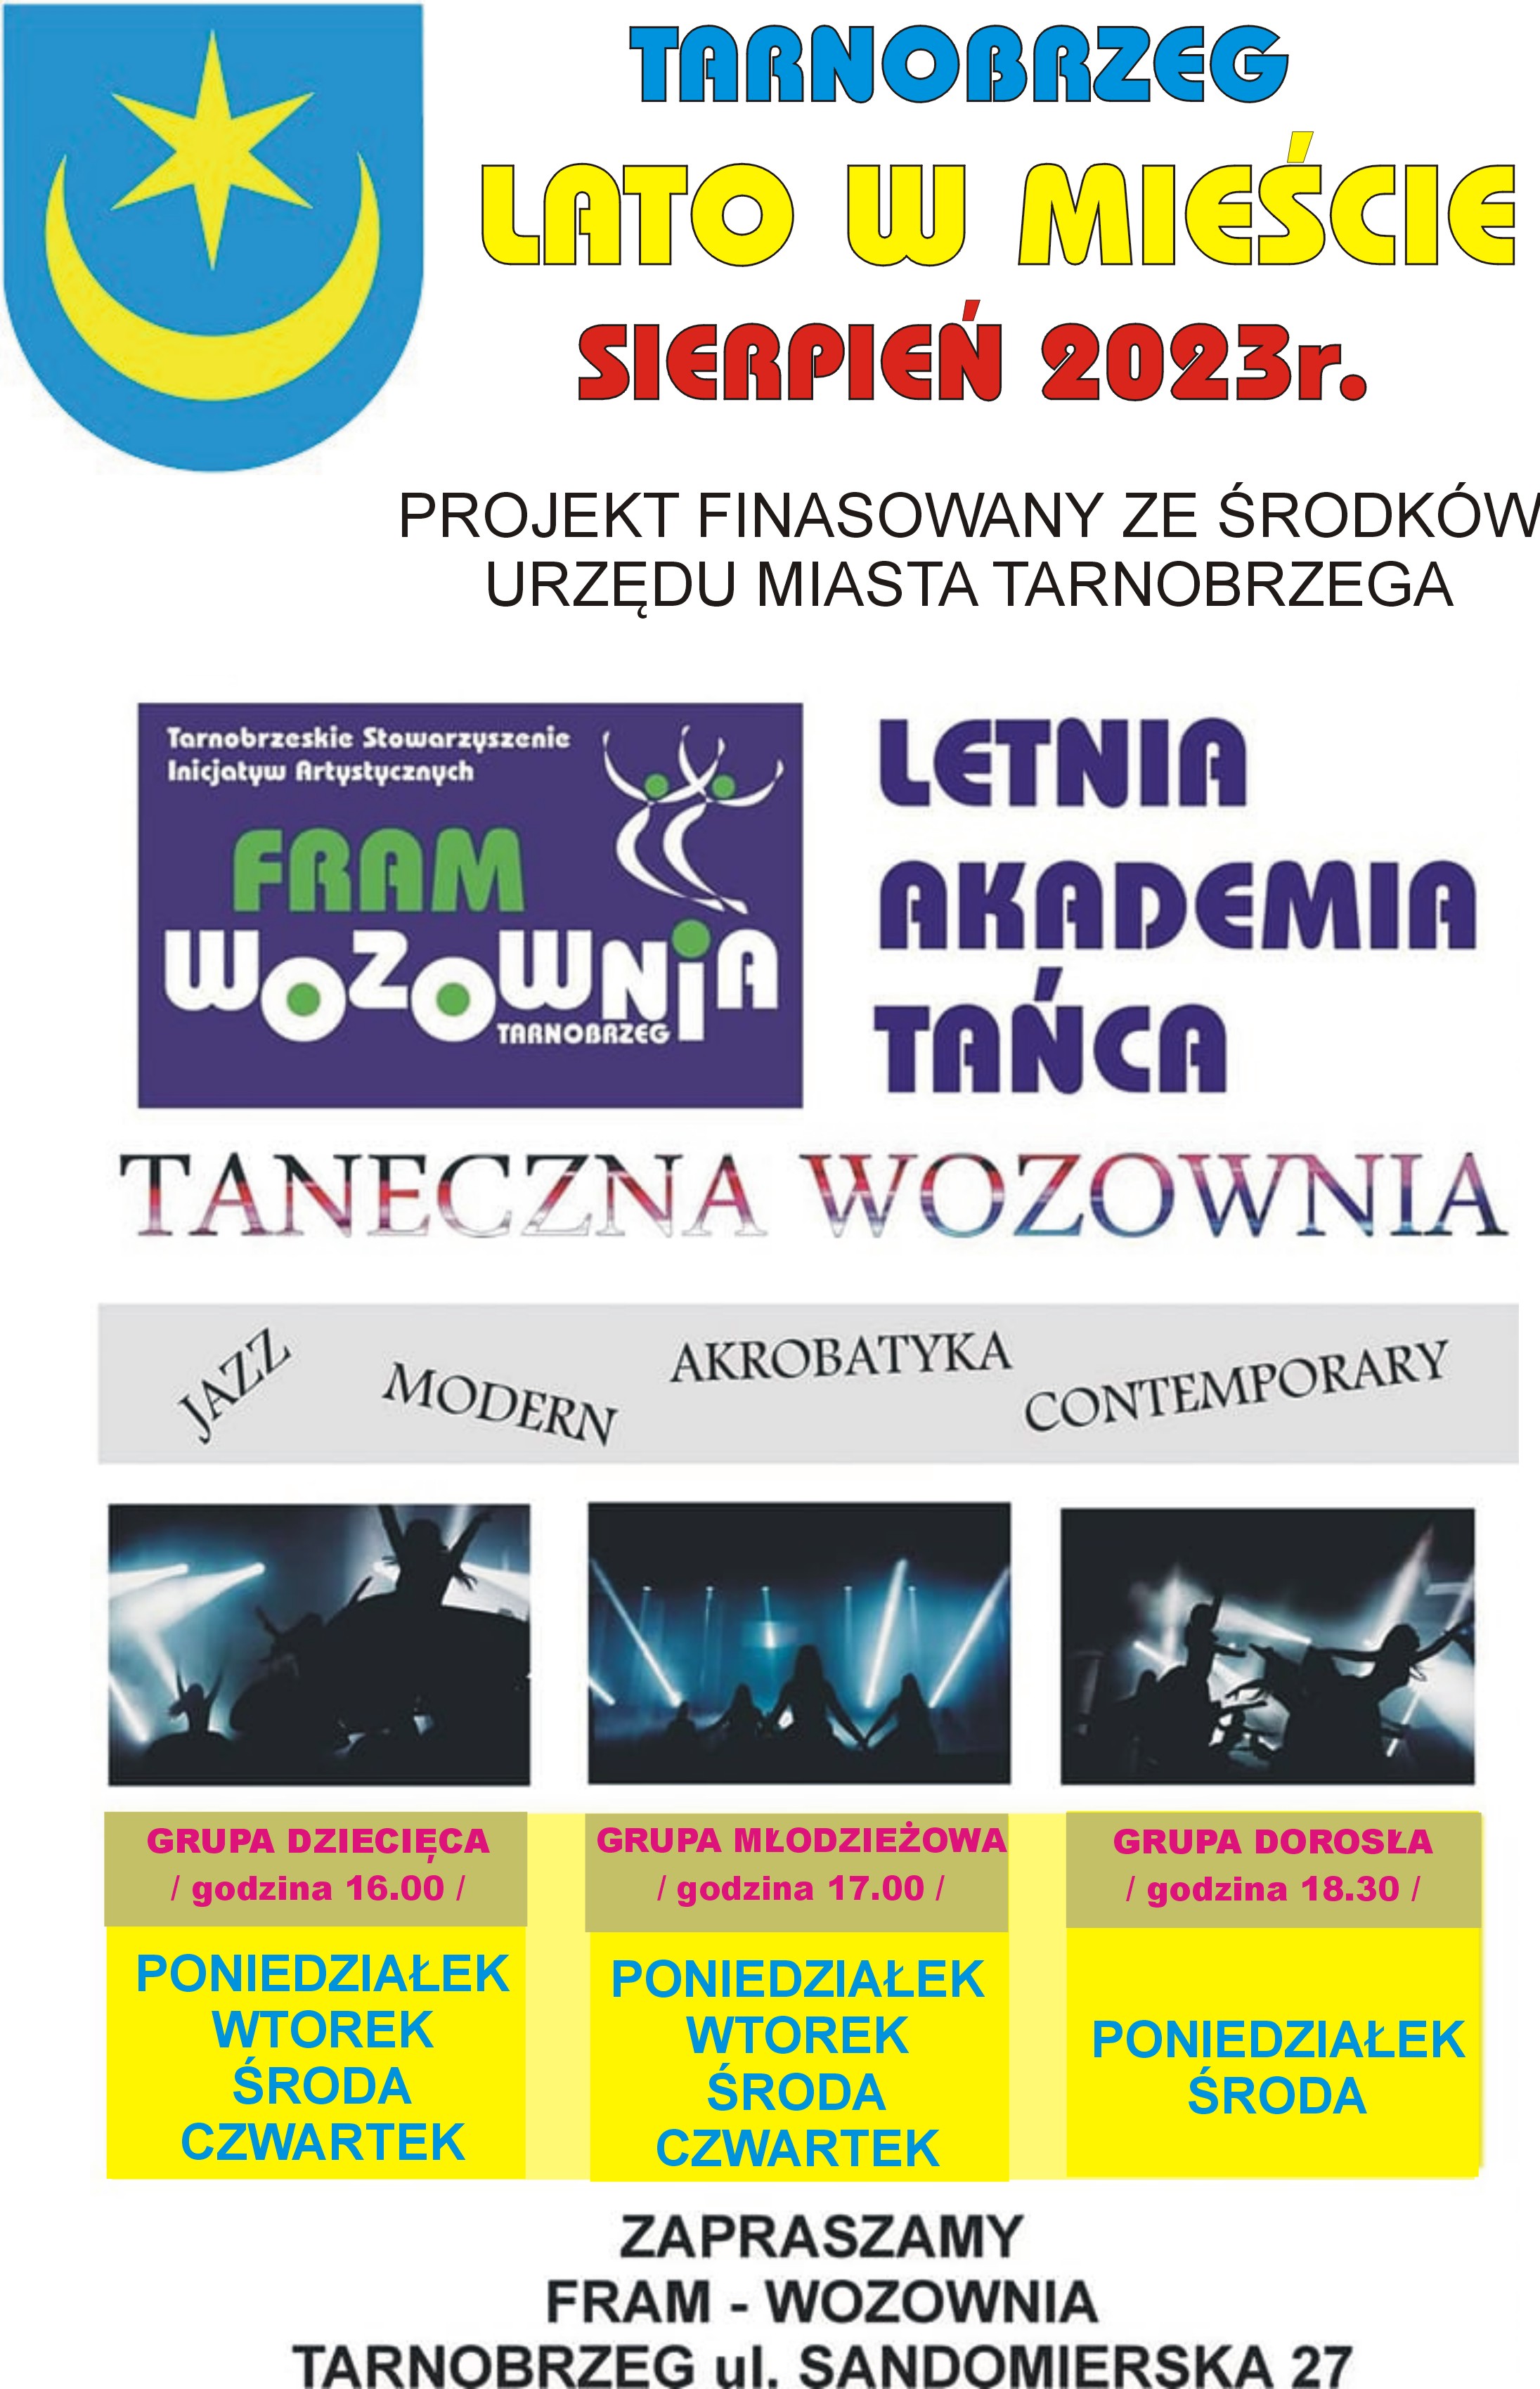 Taneczna Wozownia. Letnia Akademia Tańca.